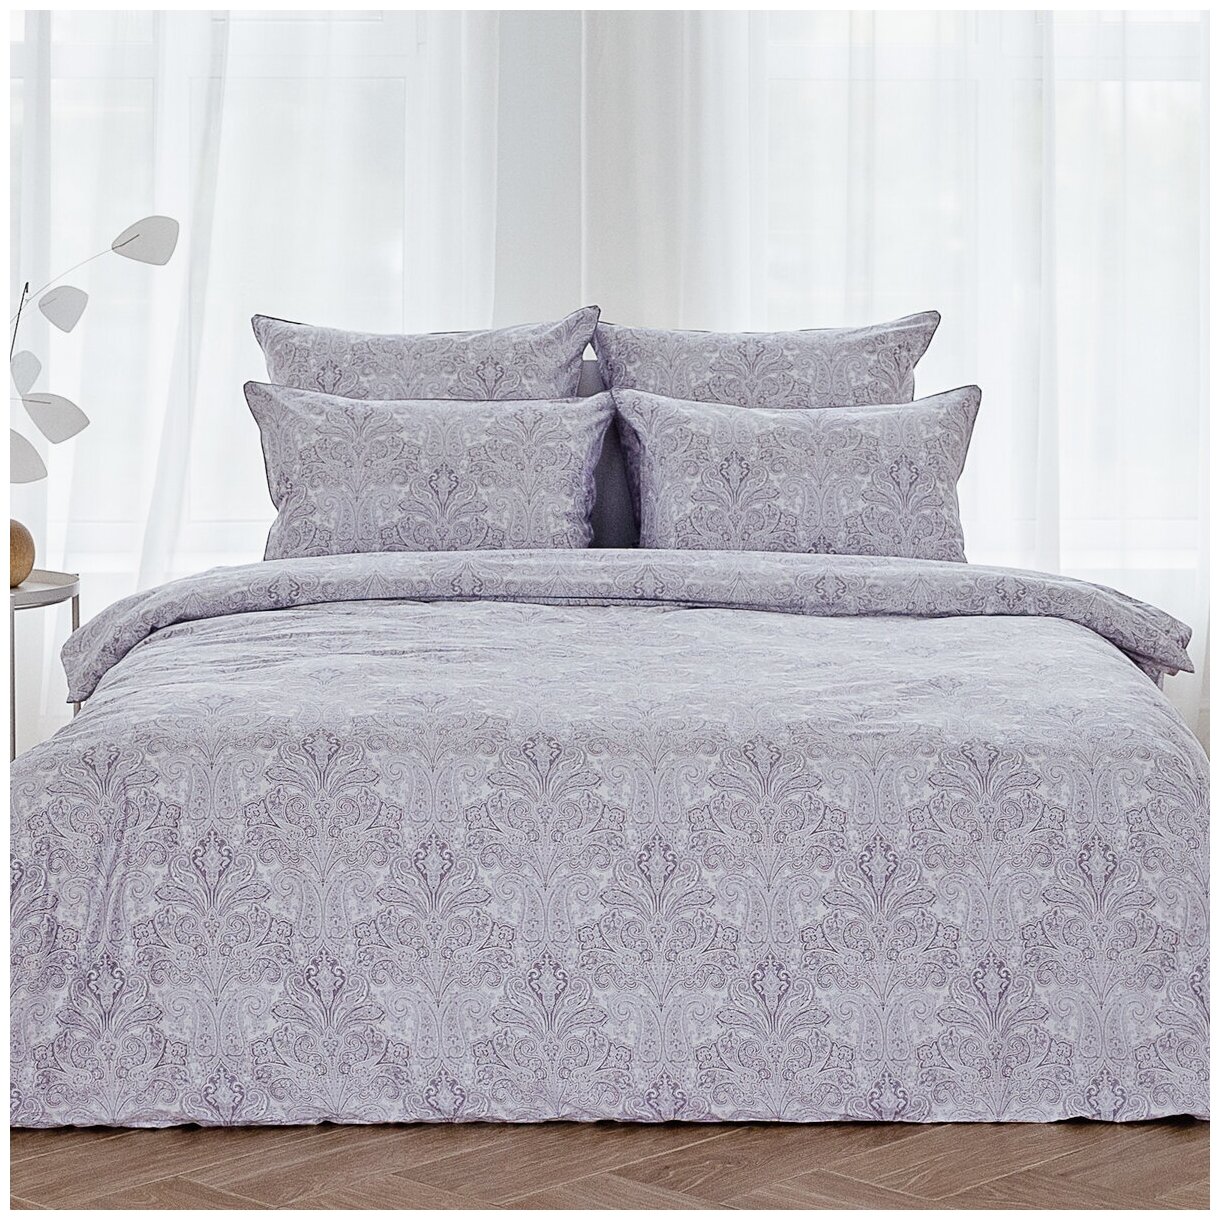 Комплект постельного белья La Prima постельное бельё мако-сатин ададжио, размер Семейный (145x215см - 2)